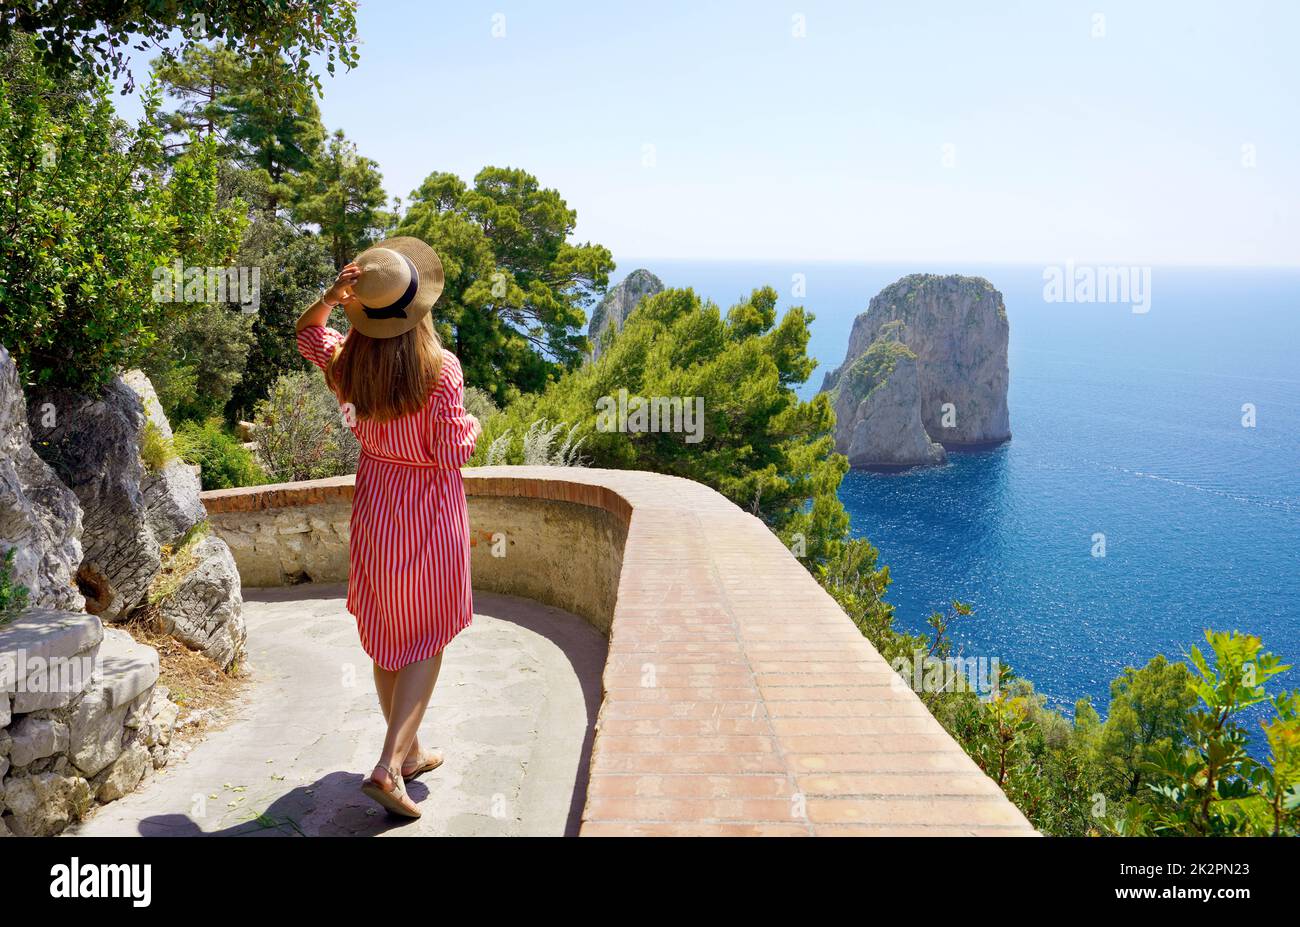 Stilvolle weibliche Reisende, die den Weg entlang mit spektakulärer Landschaft von Capri, Neapel, Italien, gehen Stockfoto